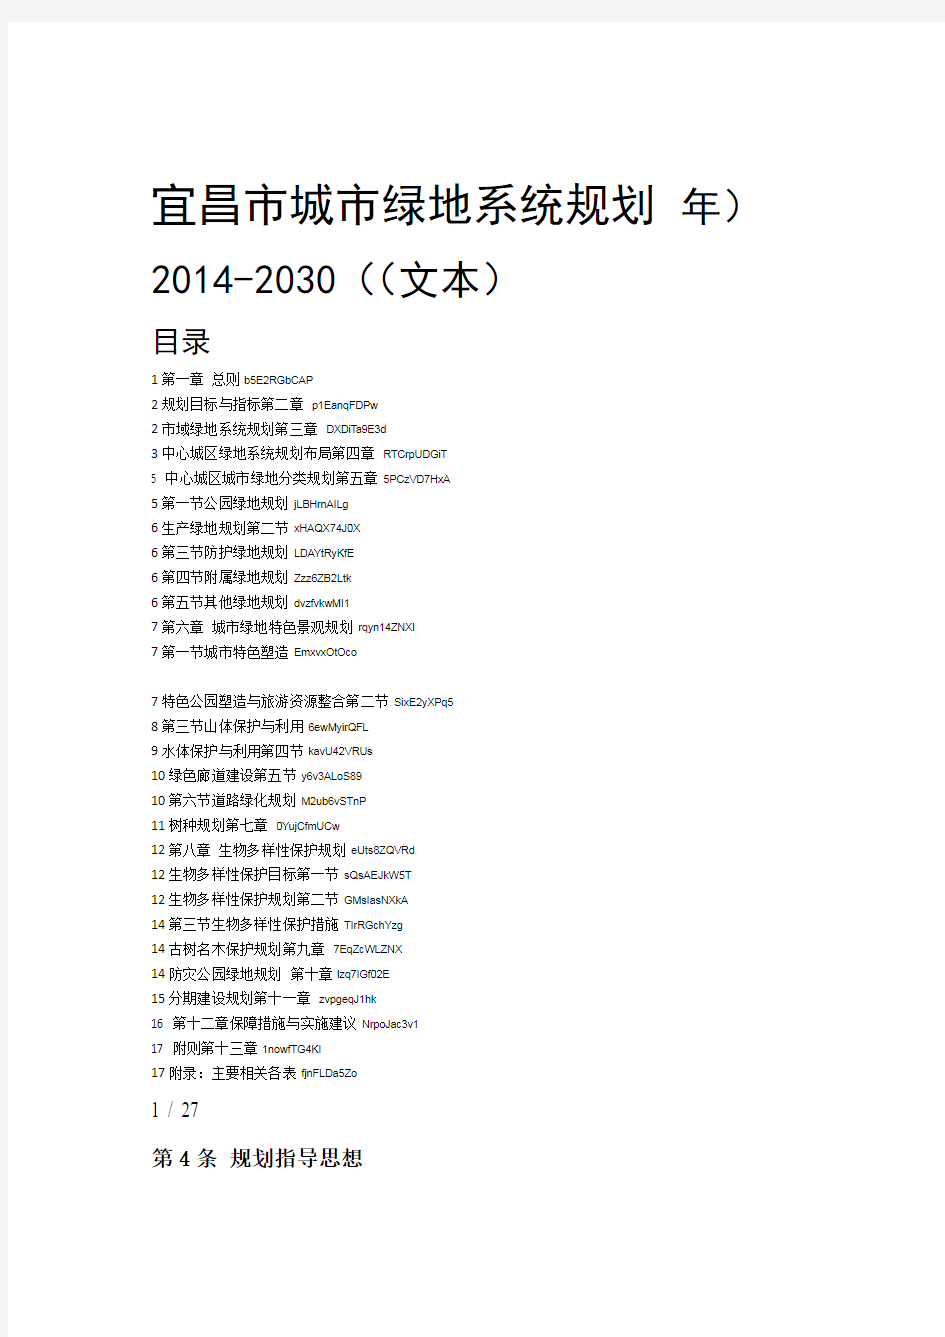 宜昌市城市绿地系统规划2014 2030年